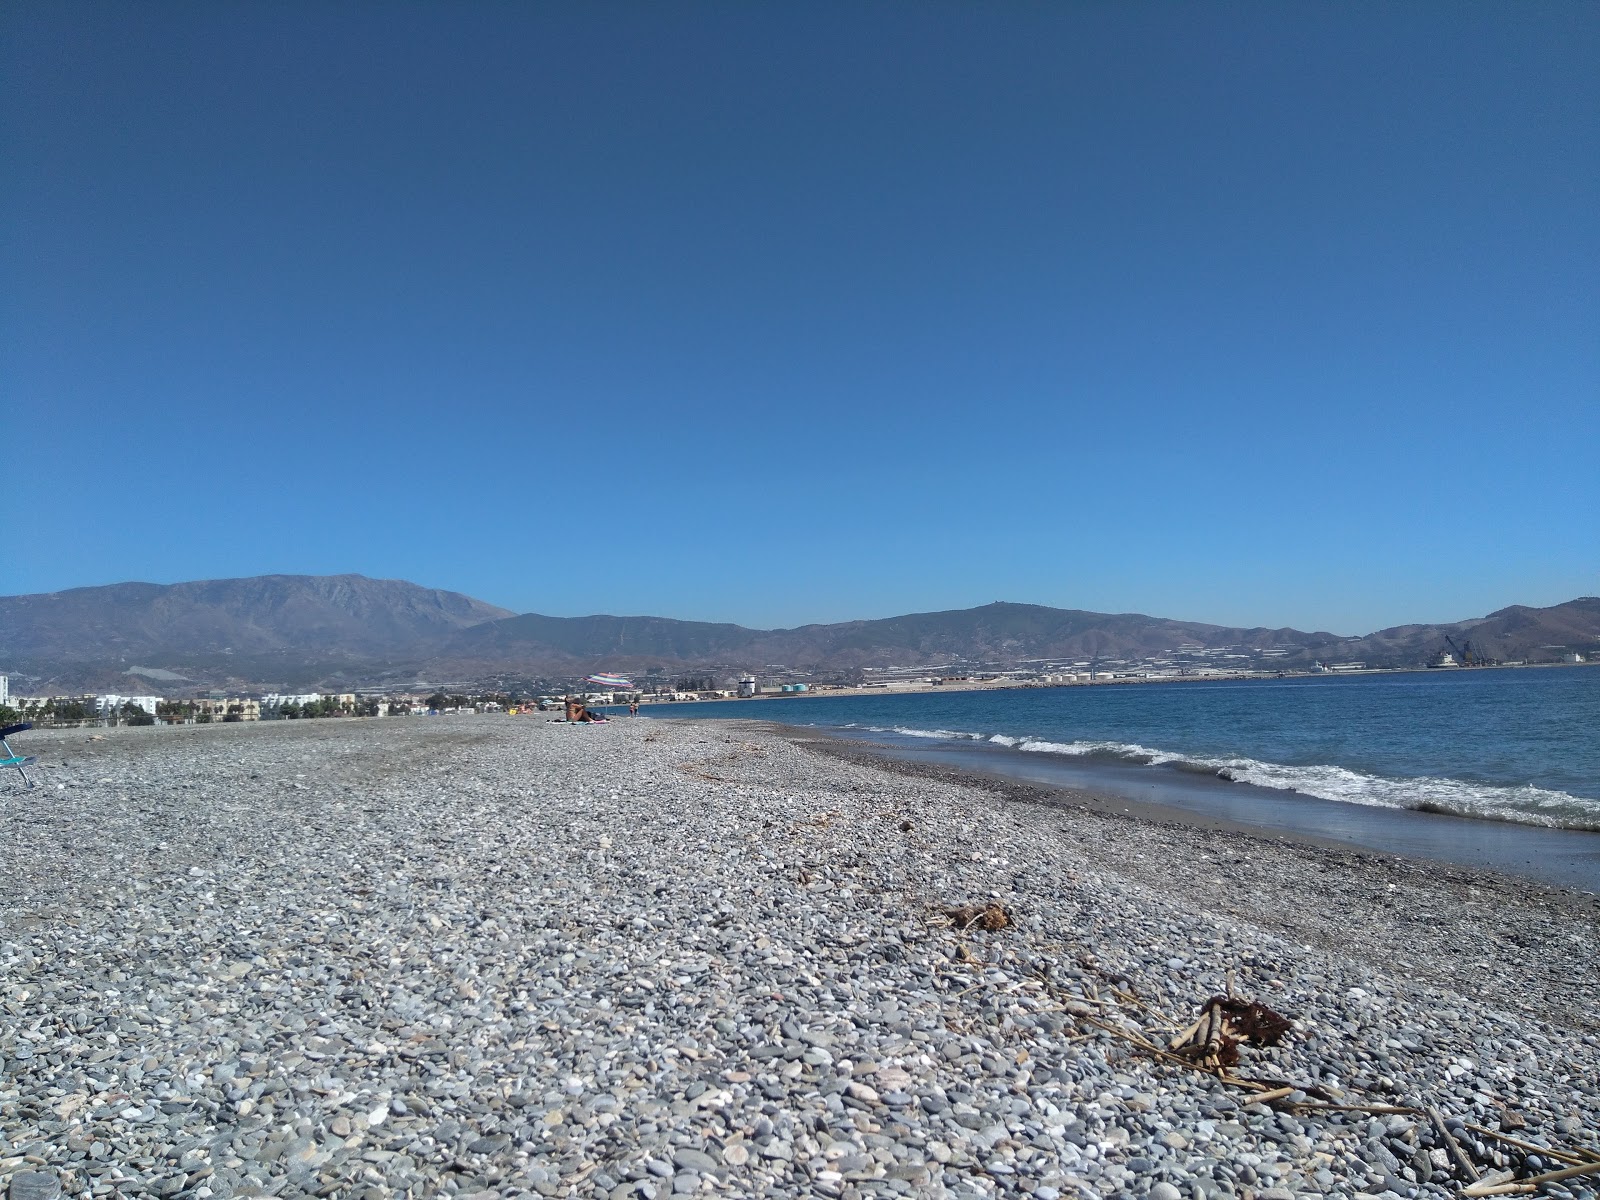 Fotografie cu Plaja Motril (Plaja Granada) cu o suprafață de apă pură albastră